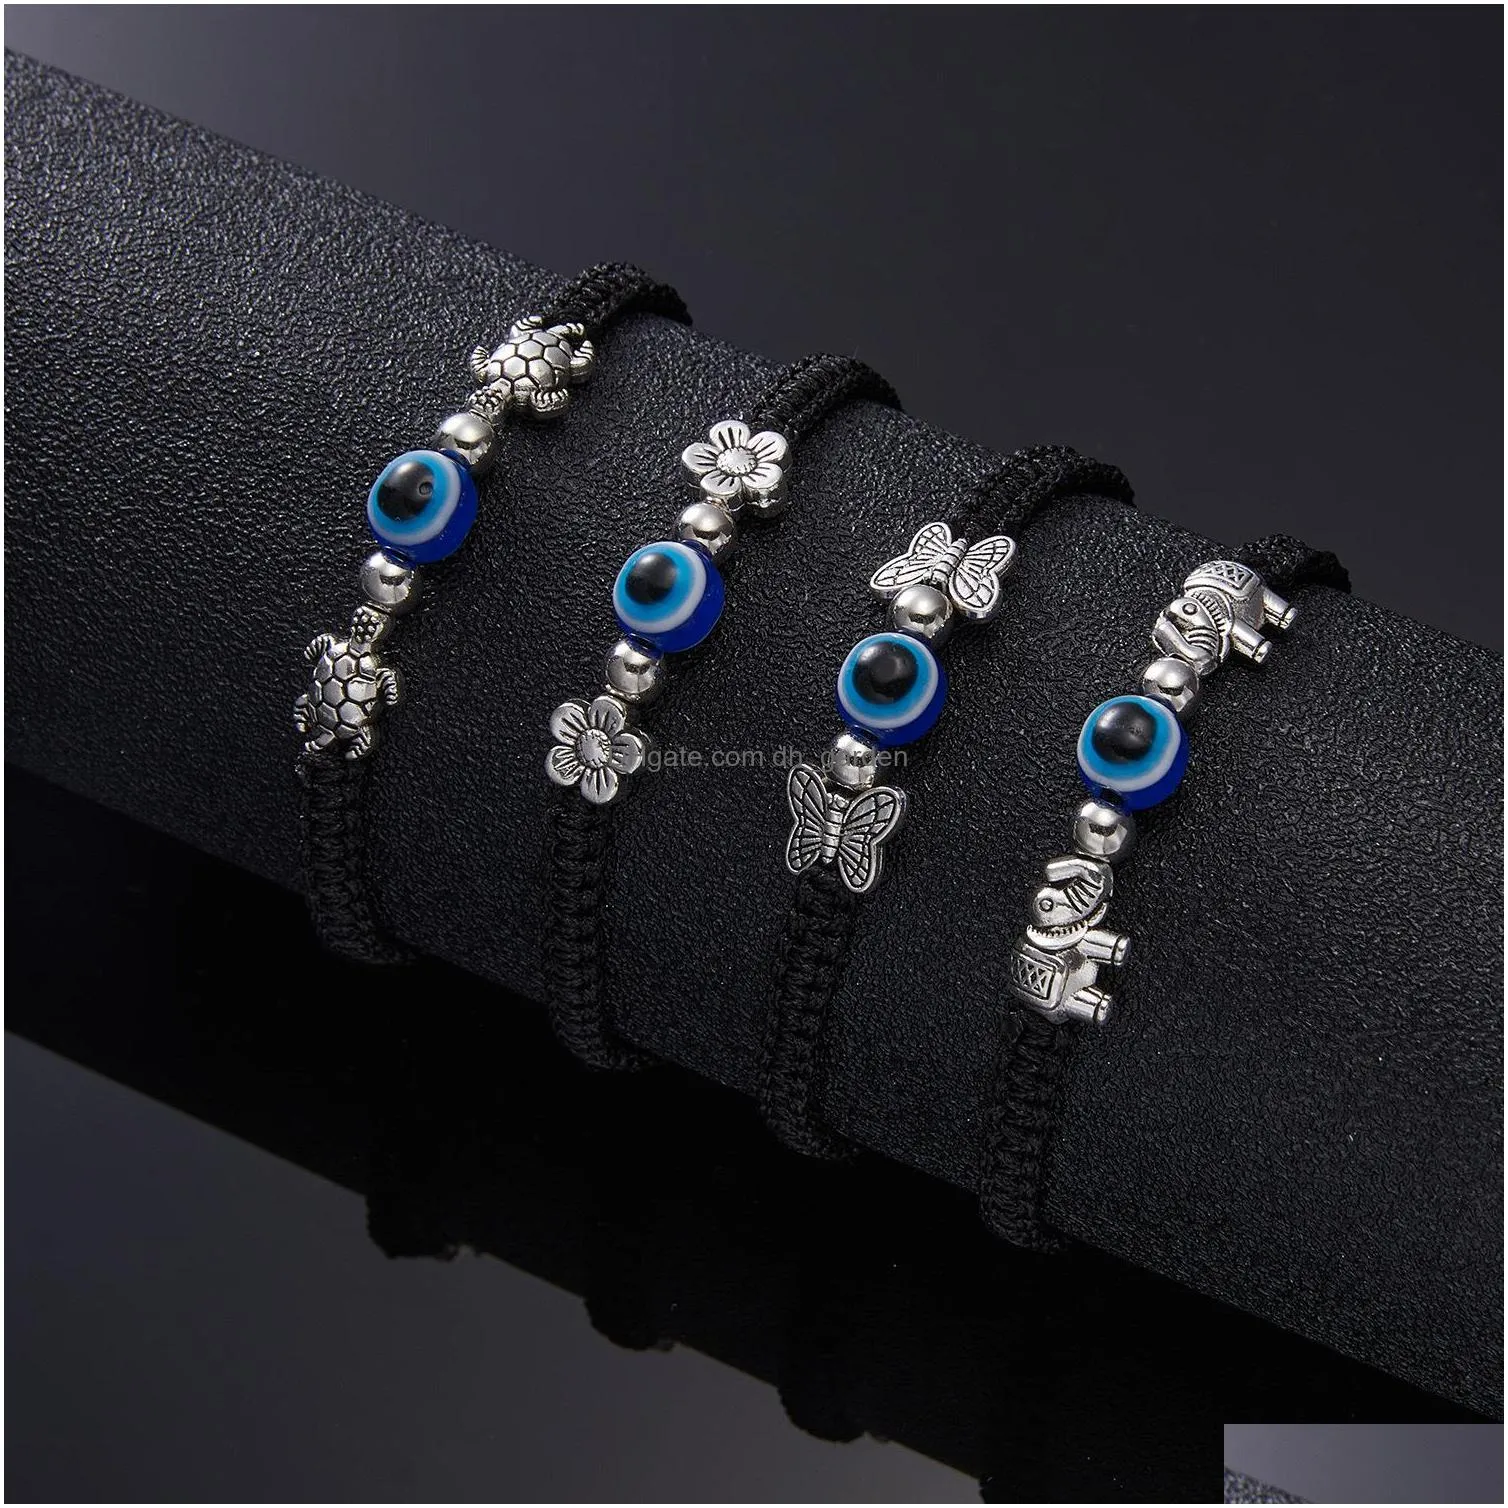 butterfly elephant blue evil eye red rope woven bracelets strands adjustable bracelet lucky bracelet